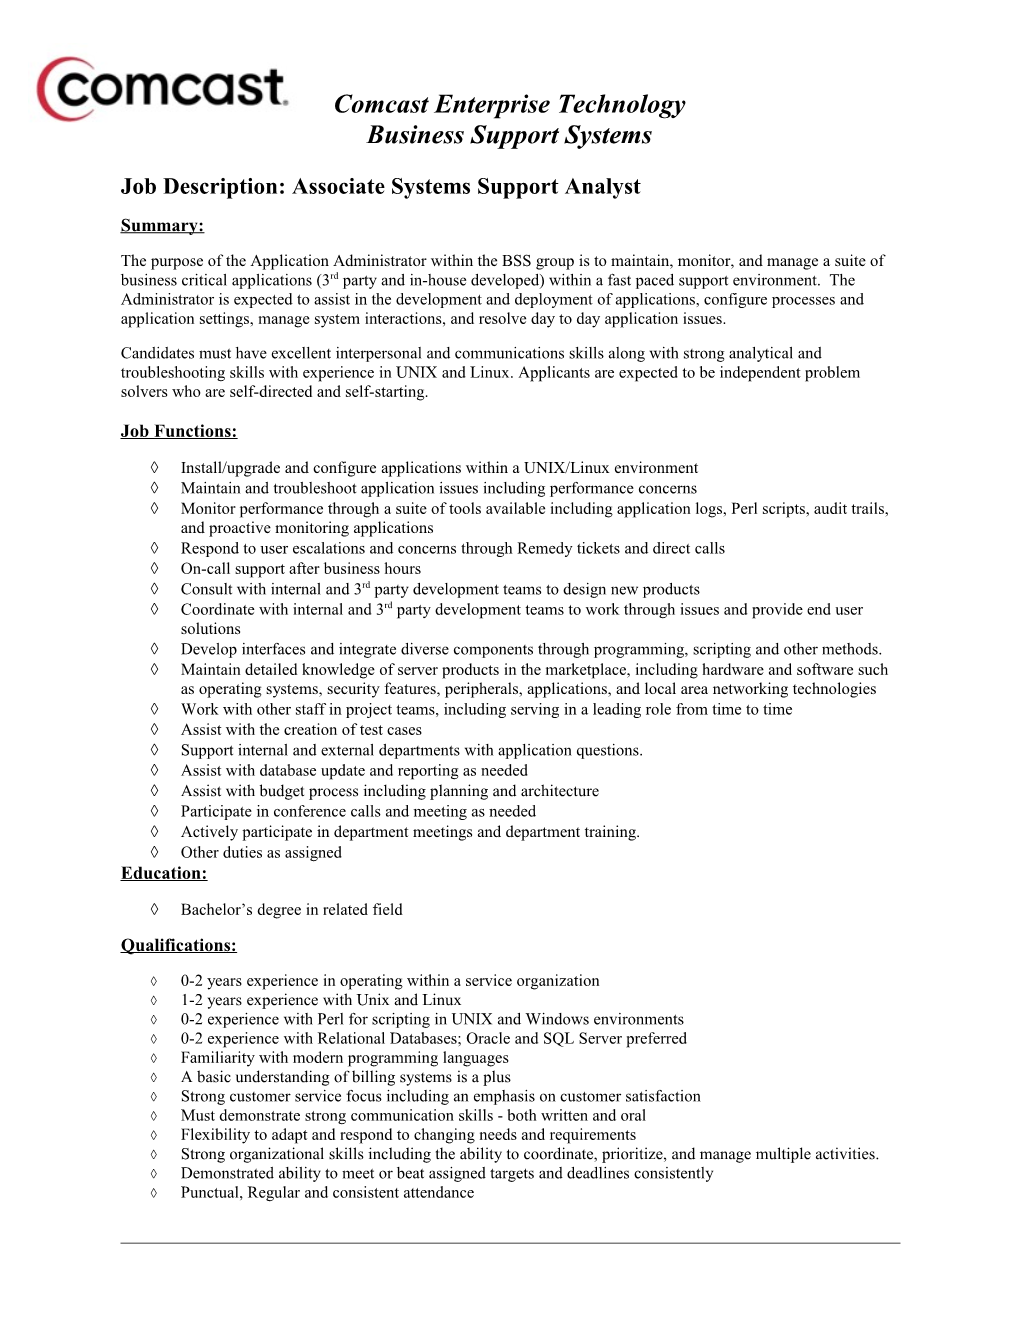 Job Description: Associate Systems Support Analyst